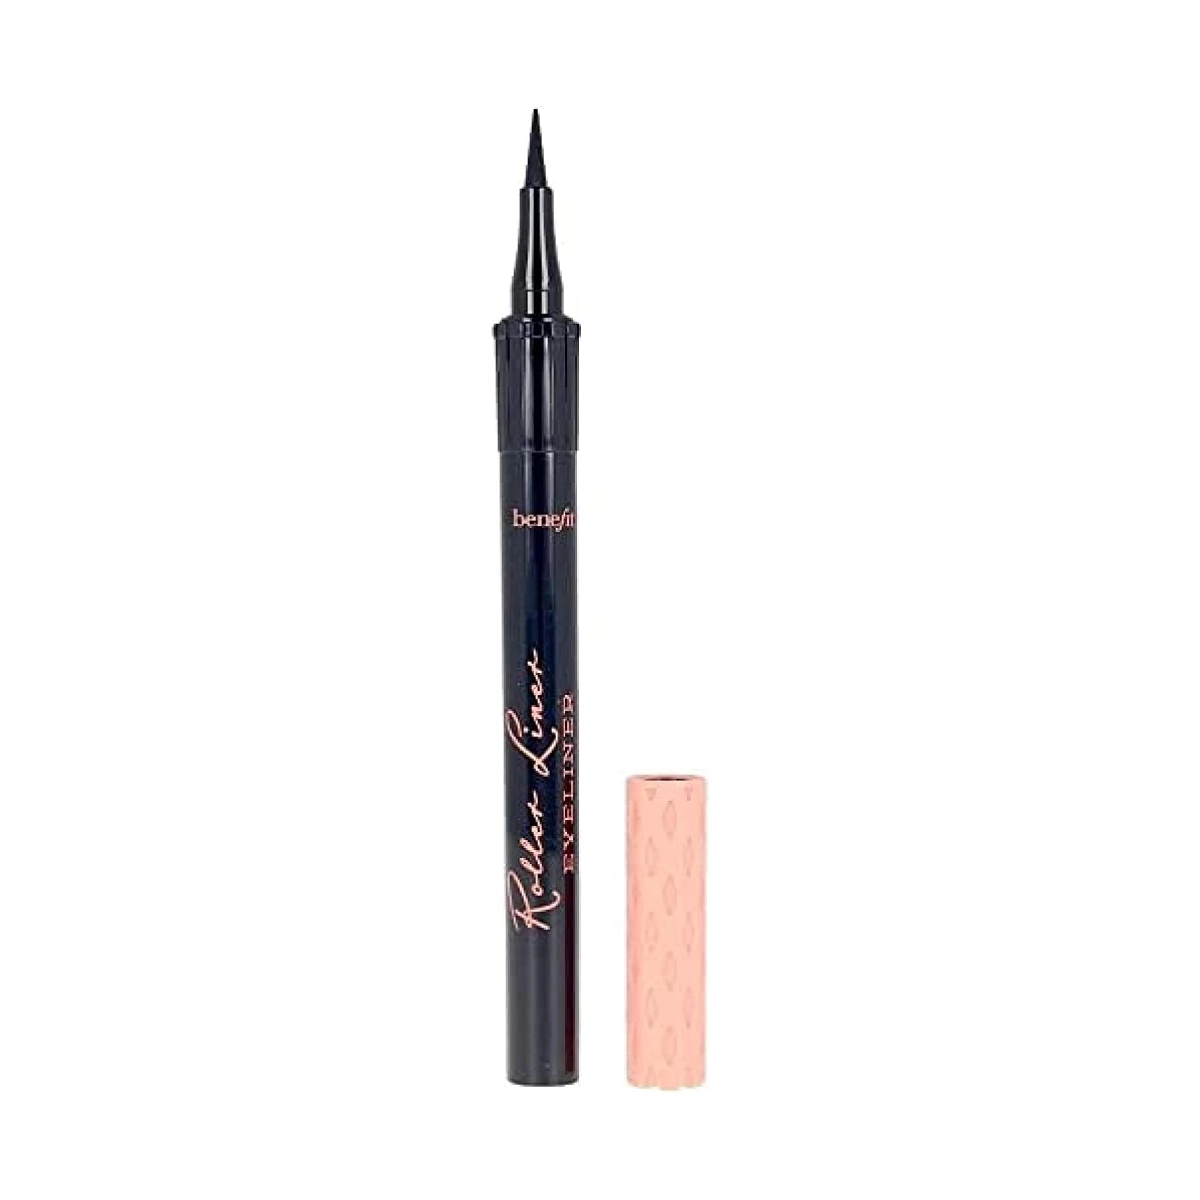 Benefit Roller Liner Liquid Eyeliner - a black liquid eyeliner pen on a white background.